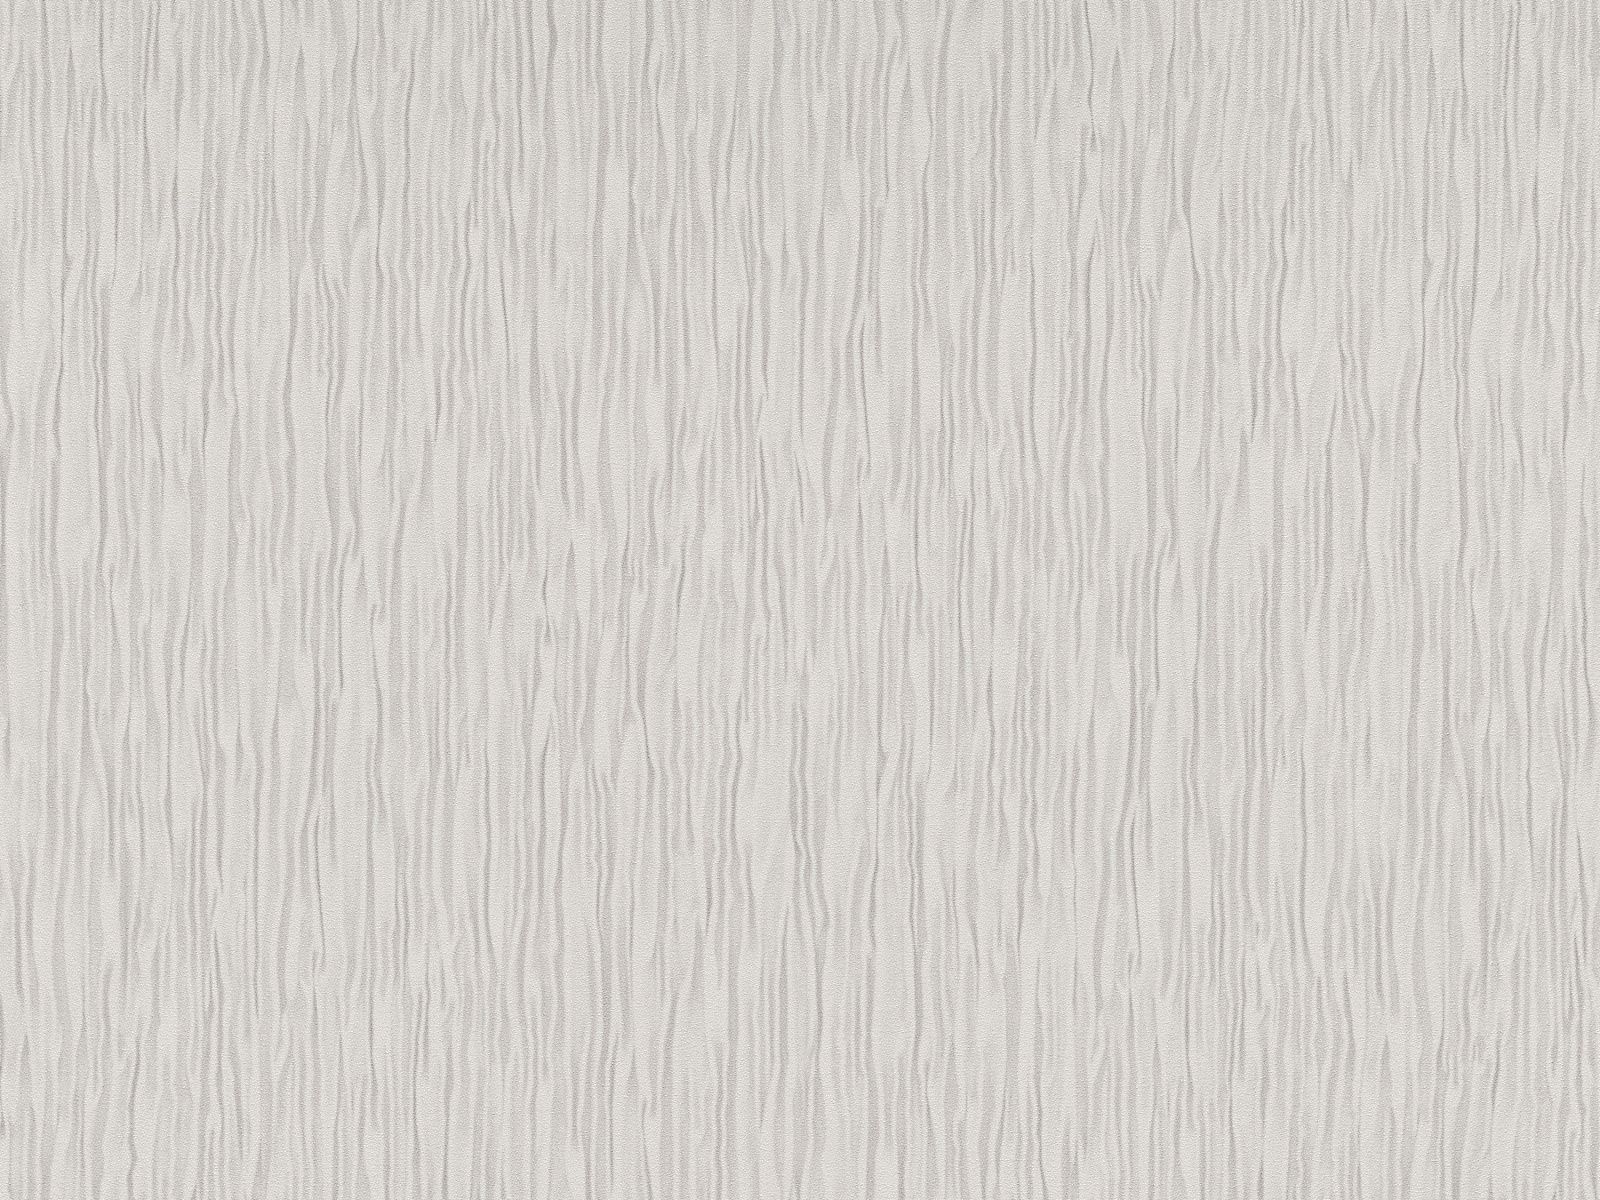 Vliesová tapeta vlnovkovitá s dekoratívnou textúrou s moaré efektom v svetlo hnedej farbe, ER-601819